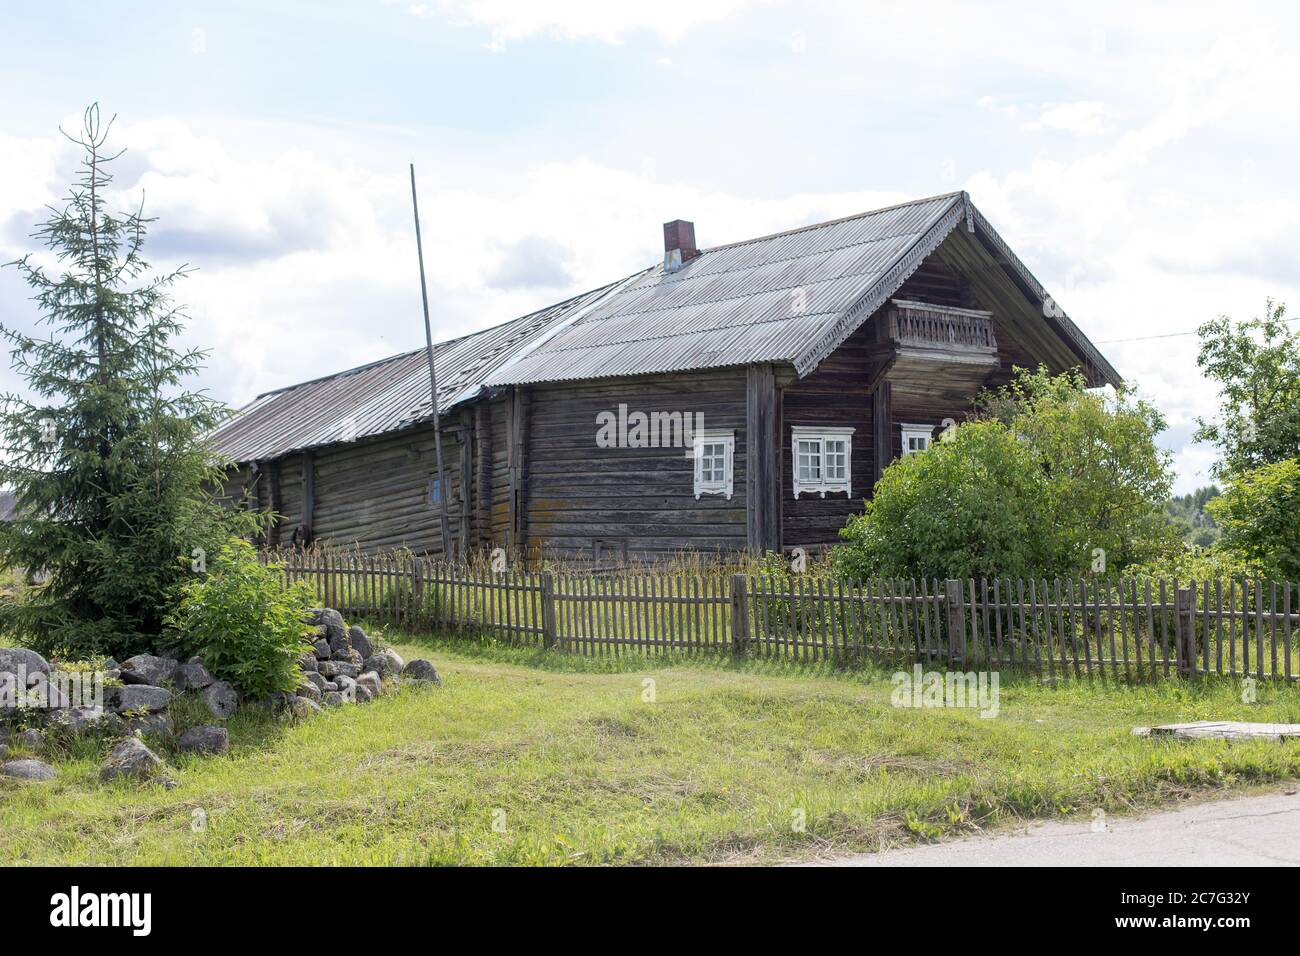 Kinerma, Rusia - 13 de julio de 2020: Kinerma es una localidad rural en el distrito de Pryazhinsky de la República de Karelia, Rusia. Foto de stock